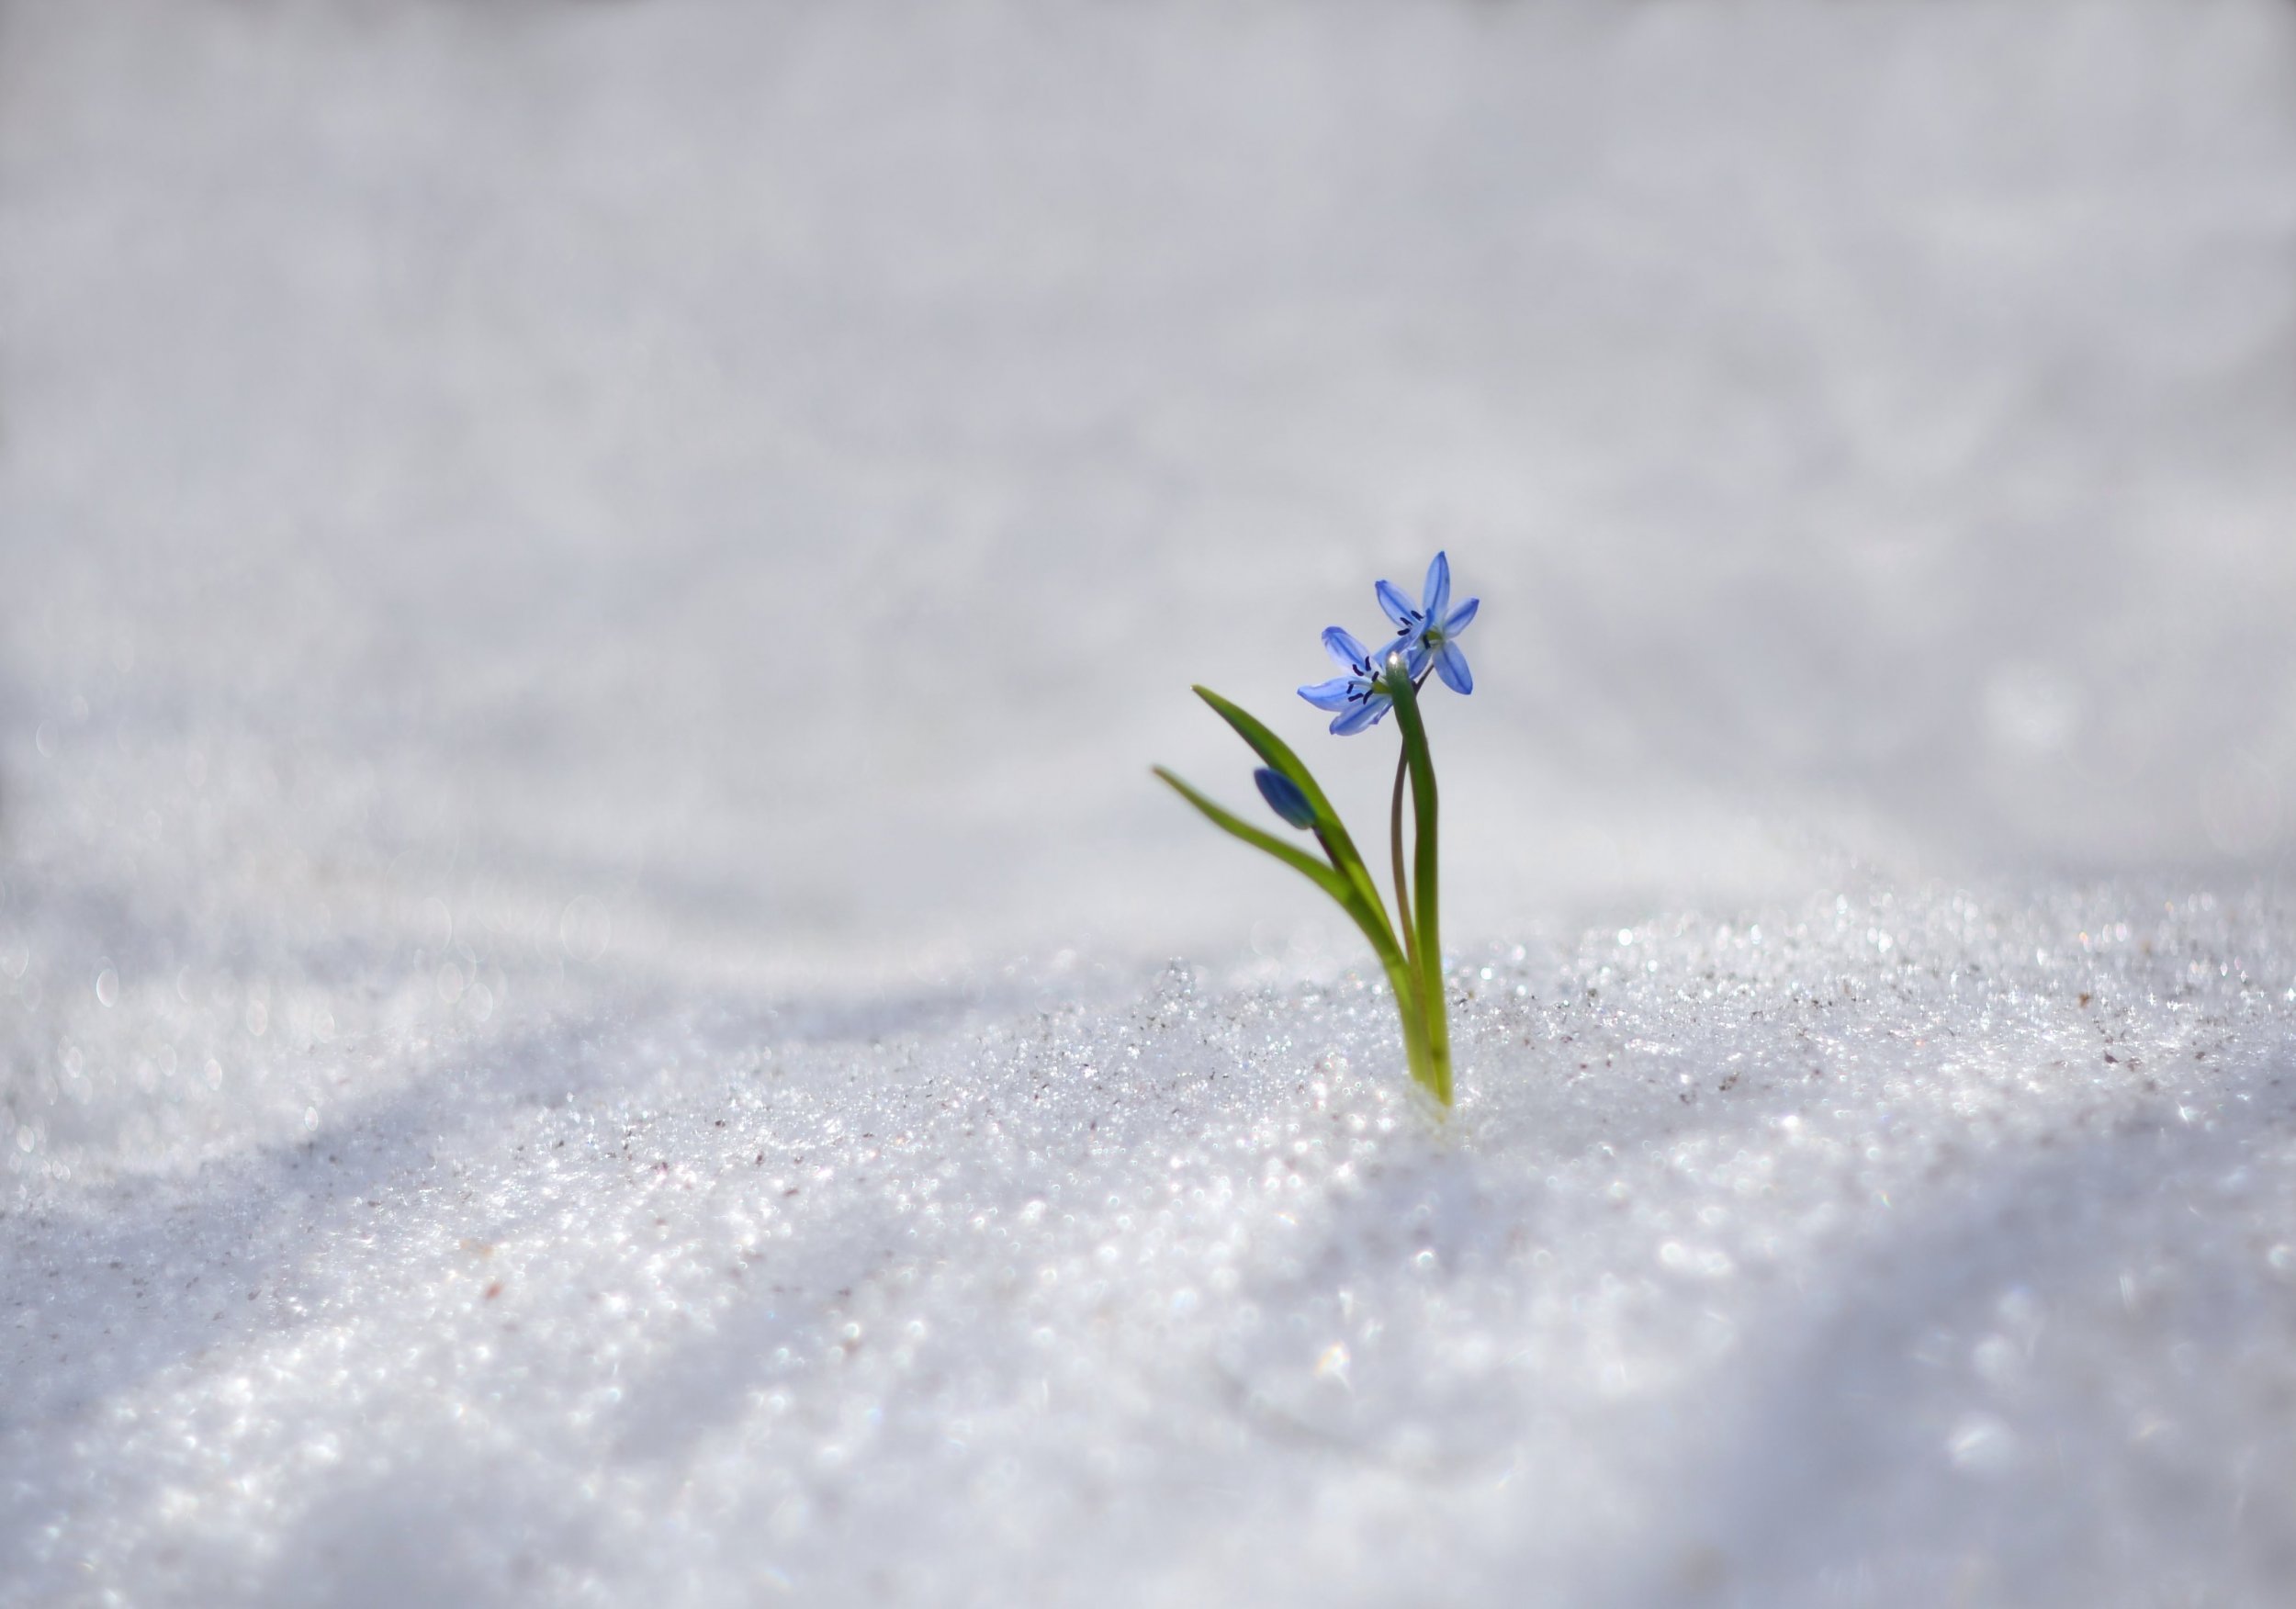 Цветы в снегу фото. Прорастает сквозь снежок к солнечным лучам цветок маленький и нежный. Заснеженные низины. Картинка сквозь снег вырос цветок. Читать и смотрели пролески сквозь снег